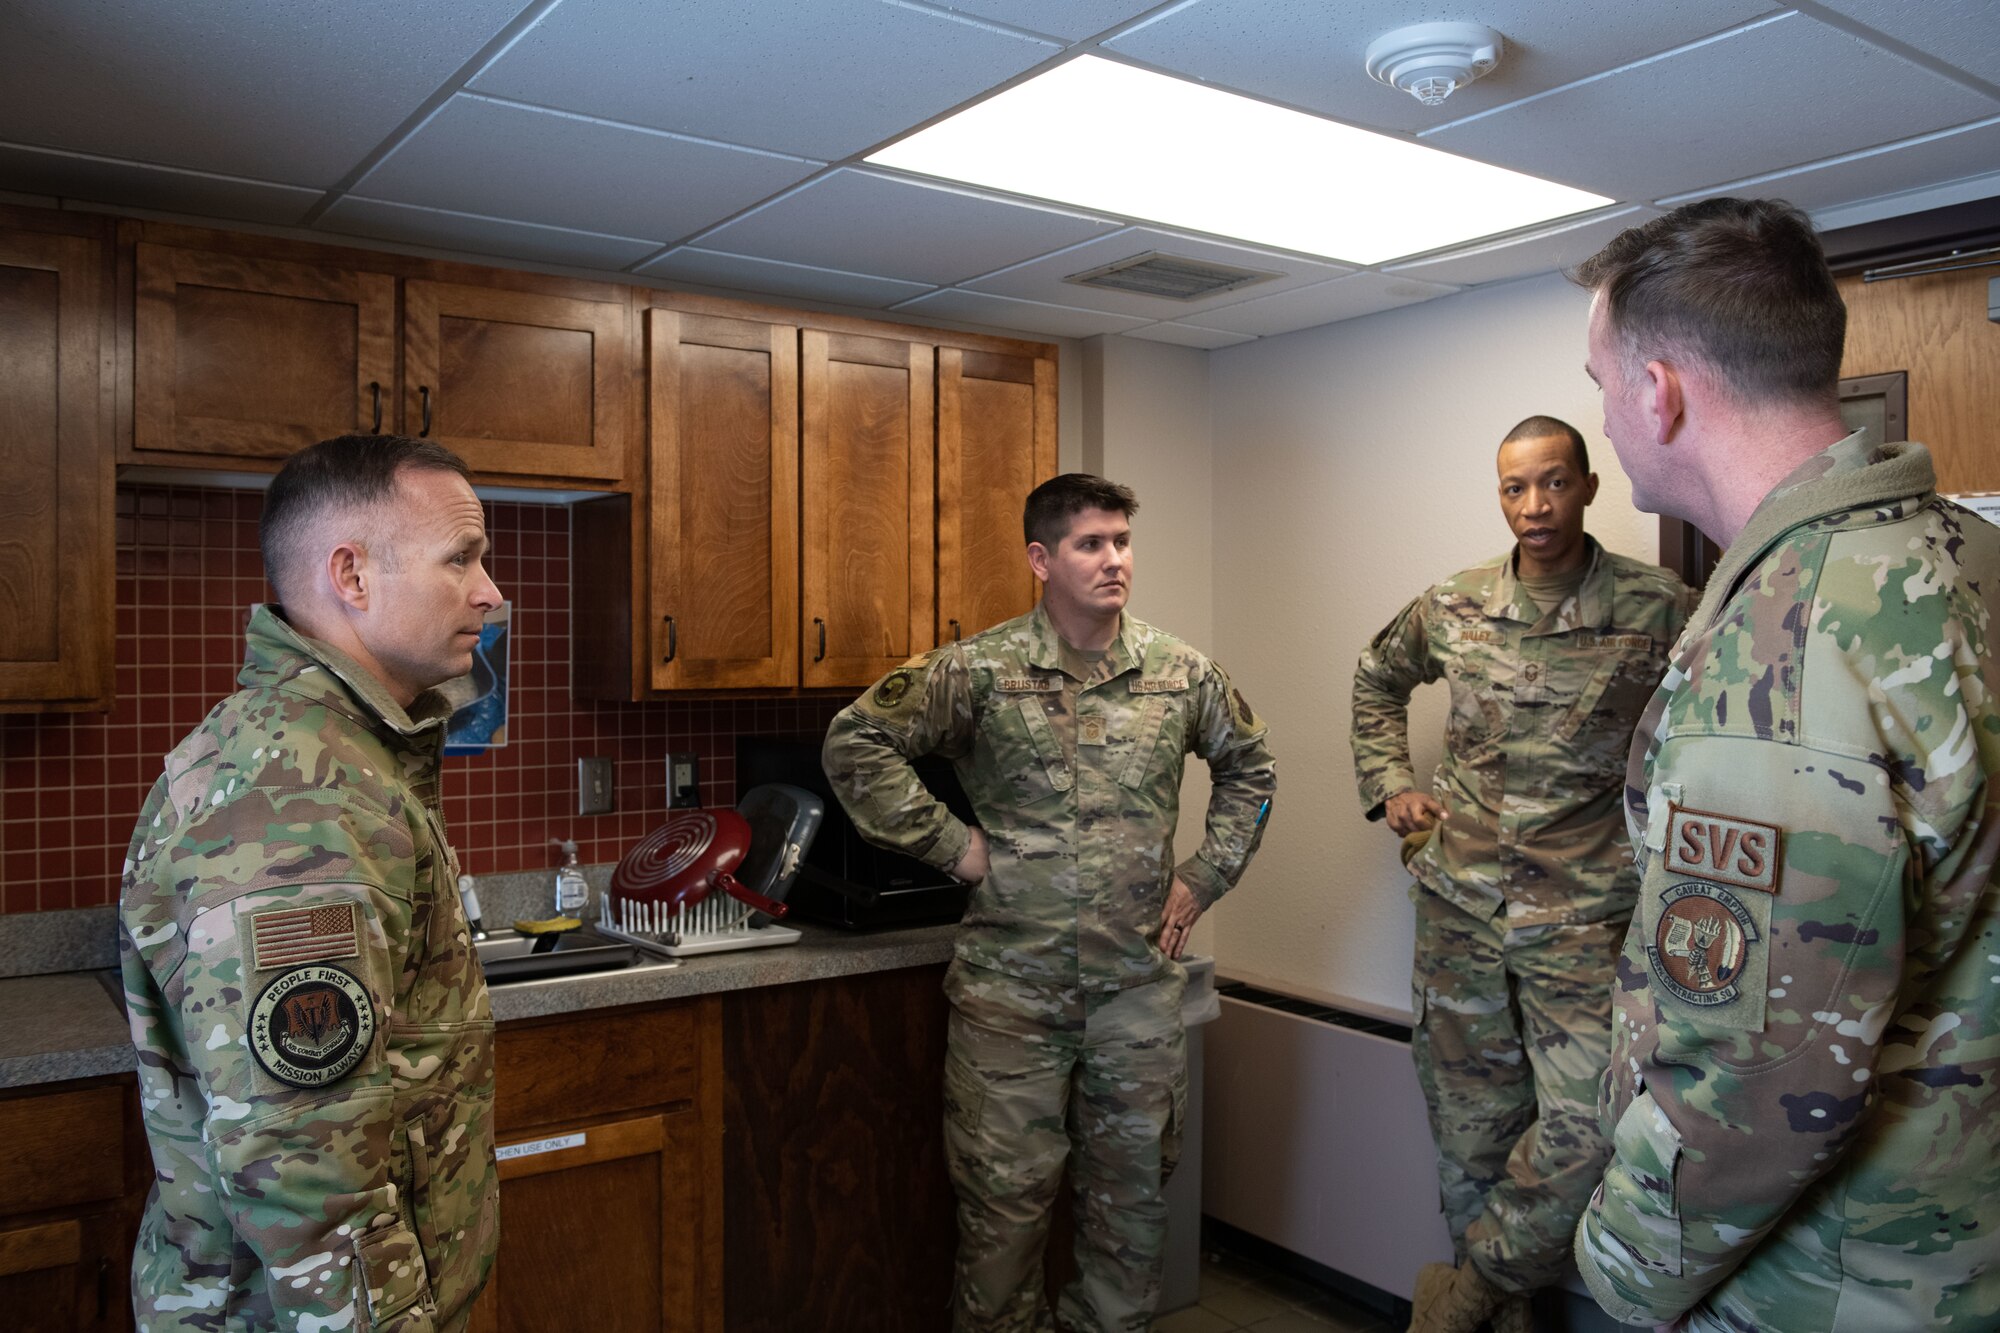 Airmen conversate in dorm kitchen.